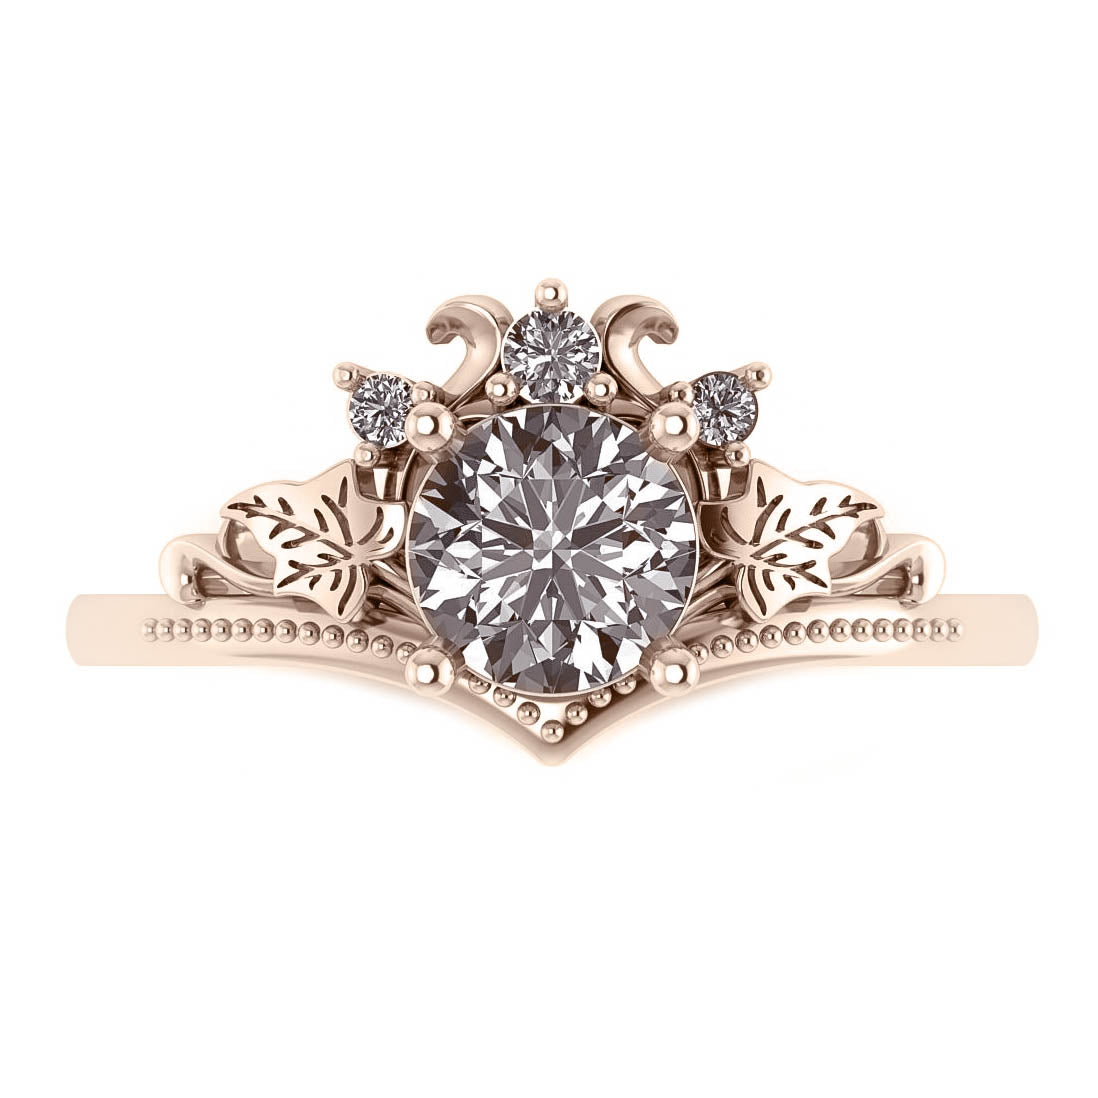 Ariadne | bridal ring set, 6 mm central gemstone - Eden Garden Jewelry™